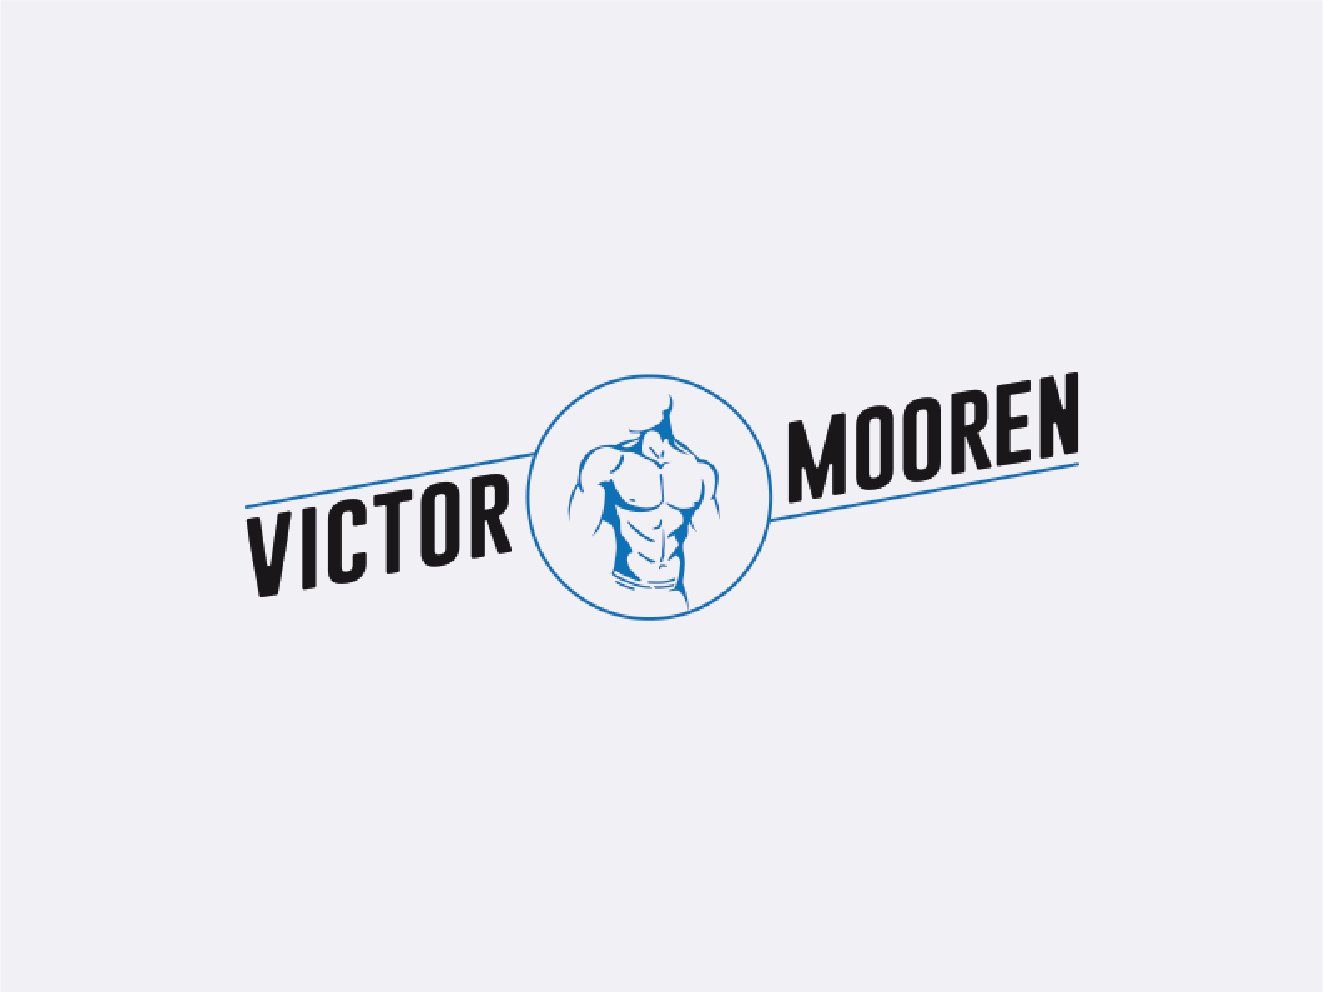 VictorMooren